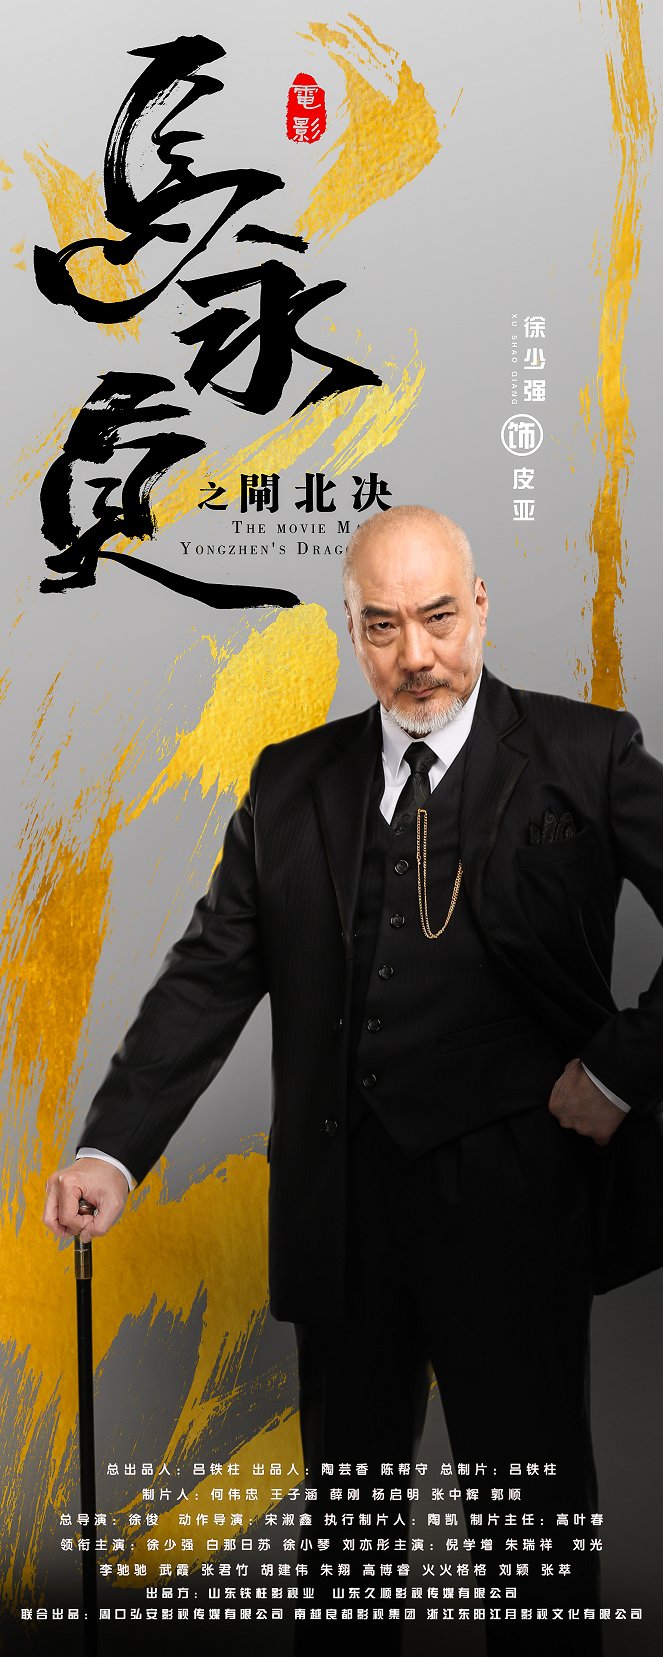 Ma Yongzhen's Dragon Whip - Posters